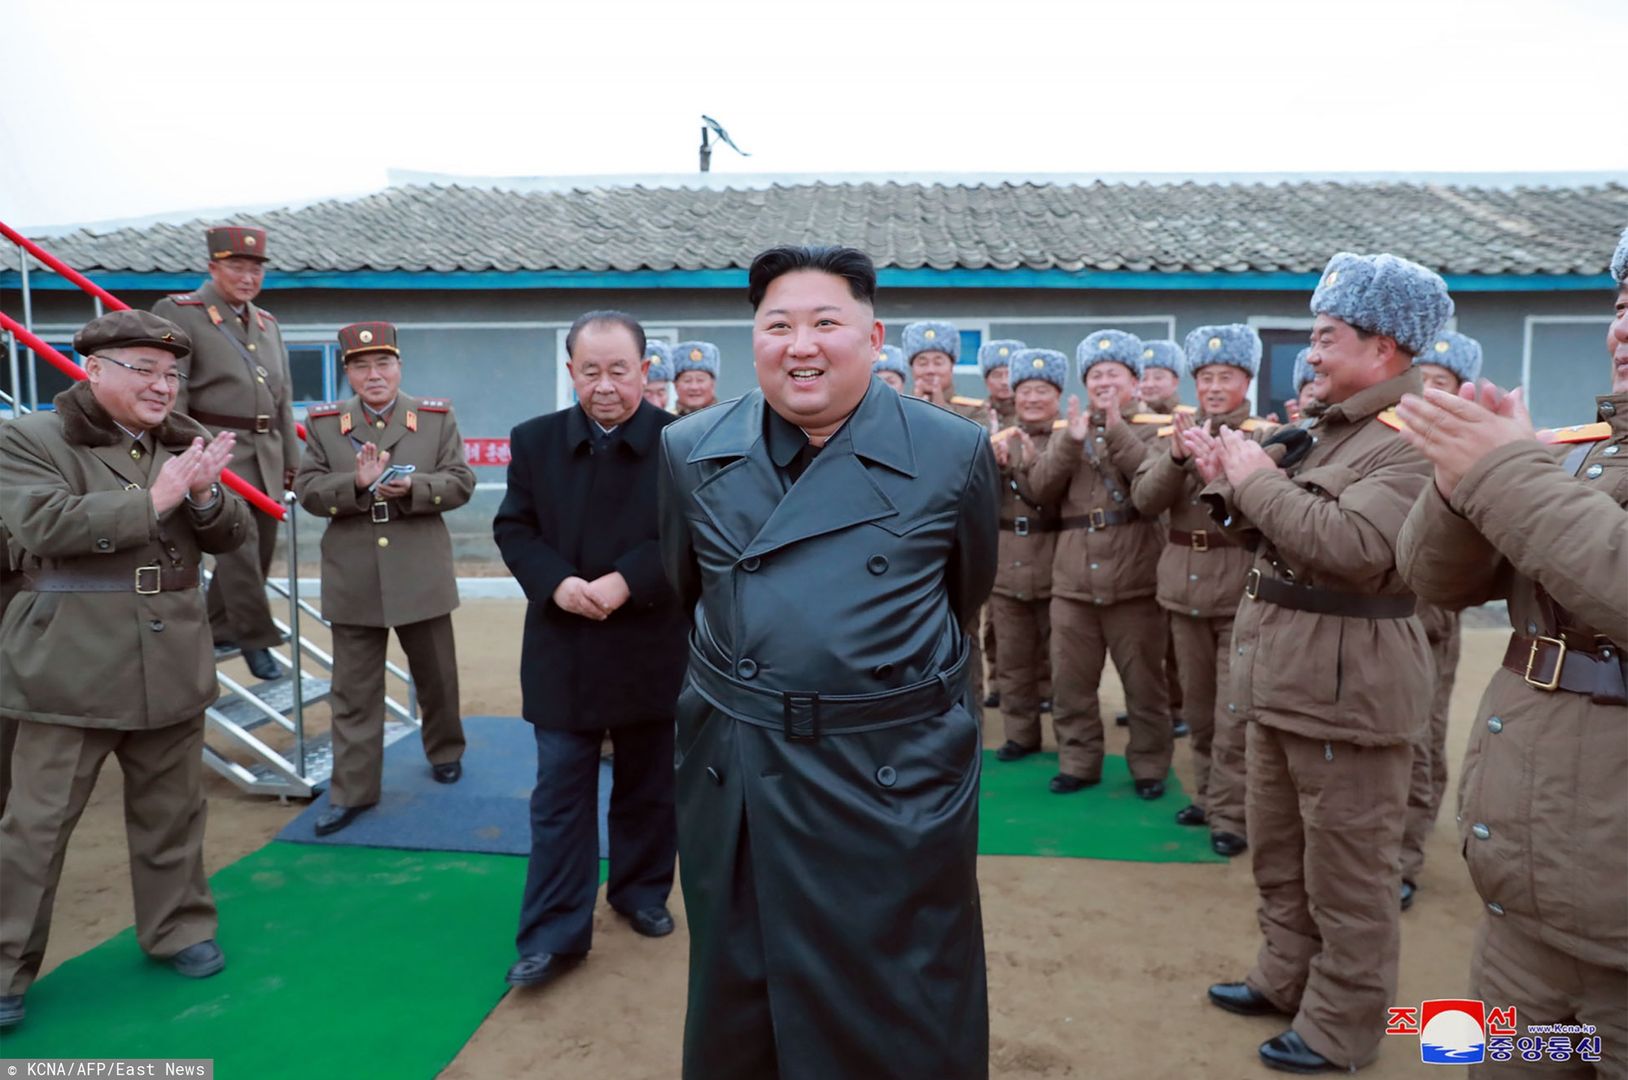 Kim Dzong Un o wystrzeleniu pocisków: "udowodniliśmy wyższość wojskową"